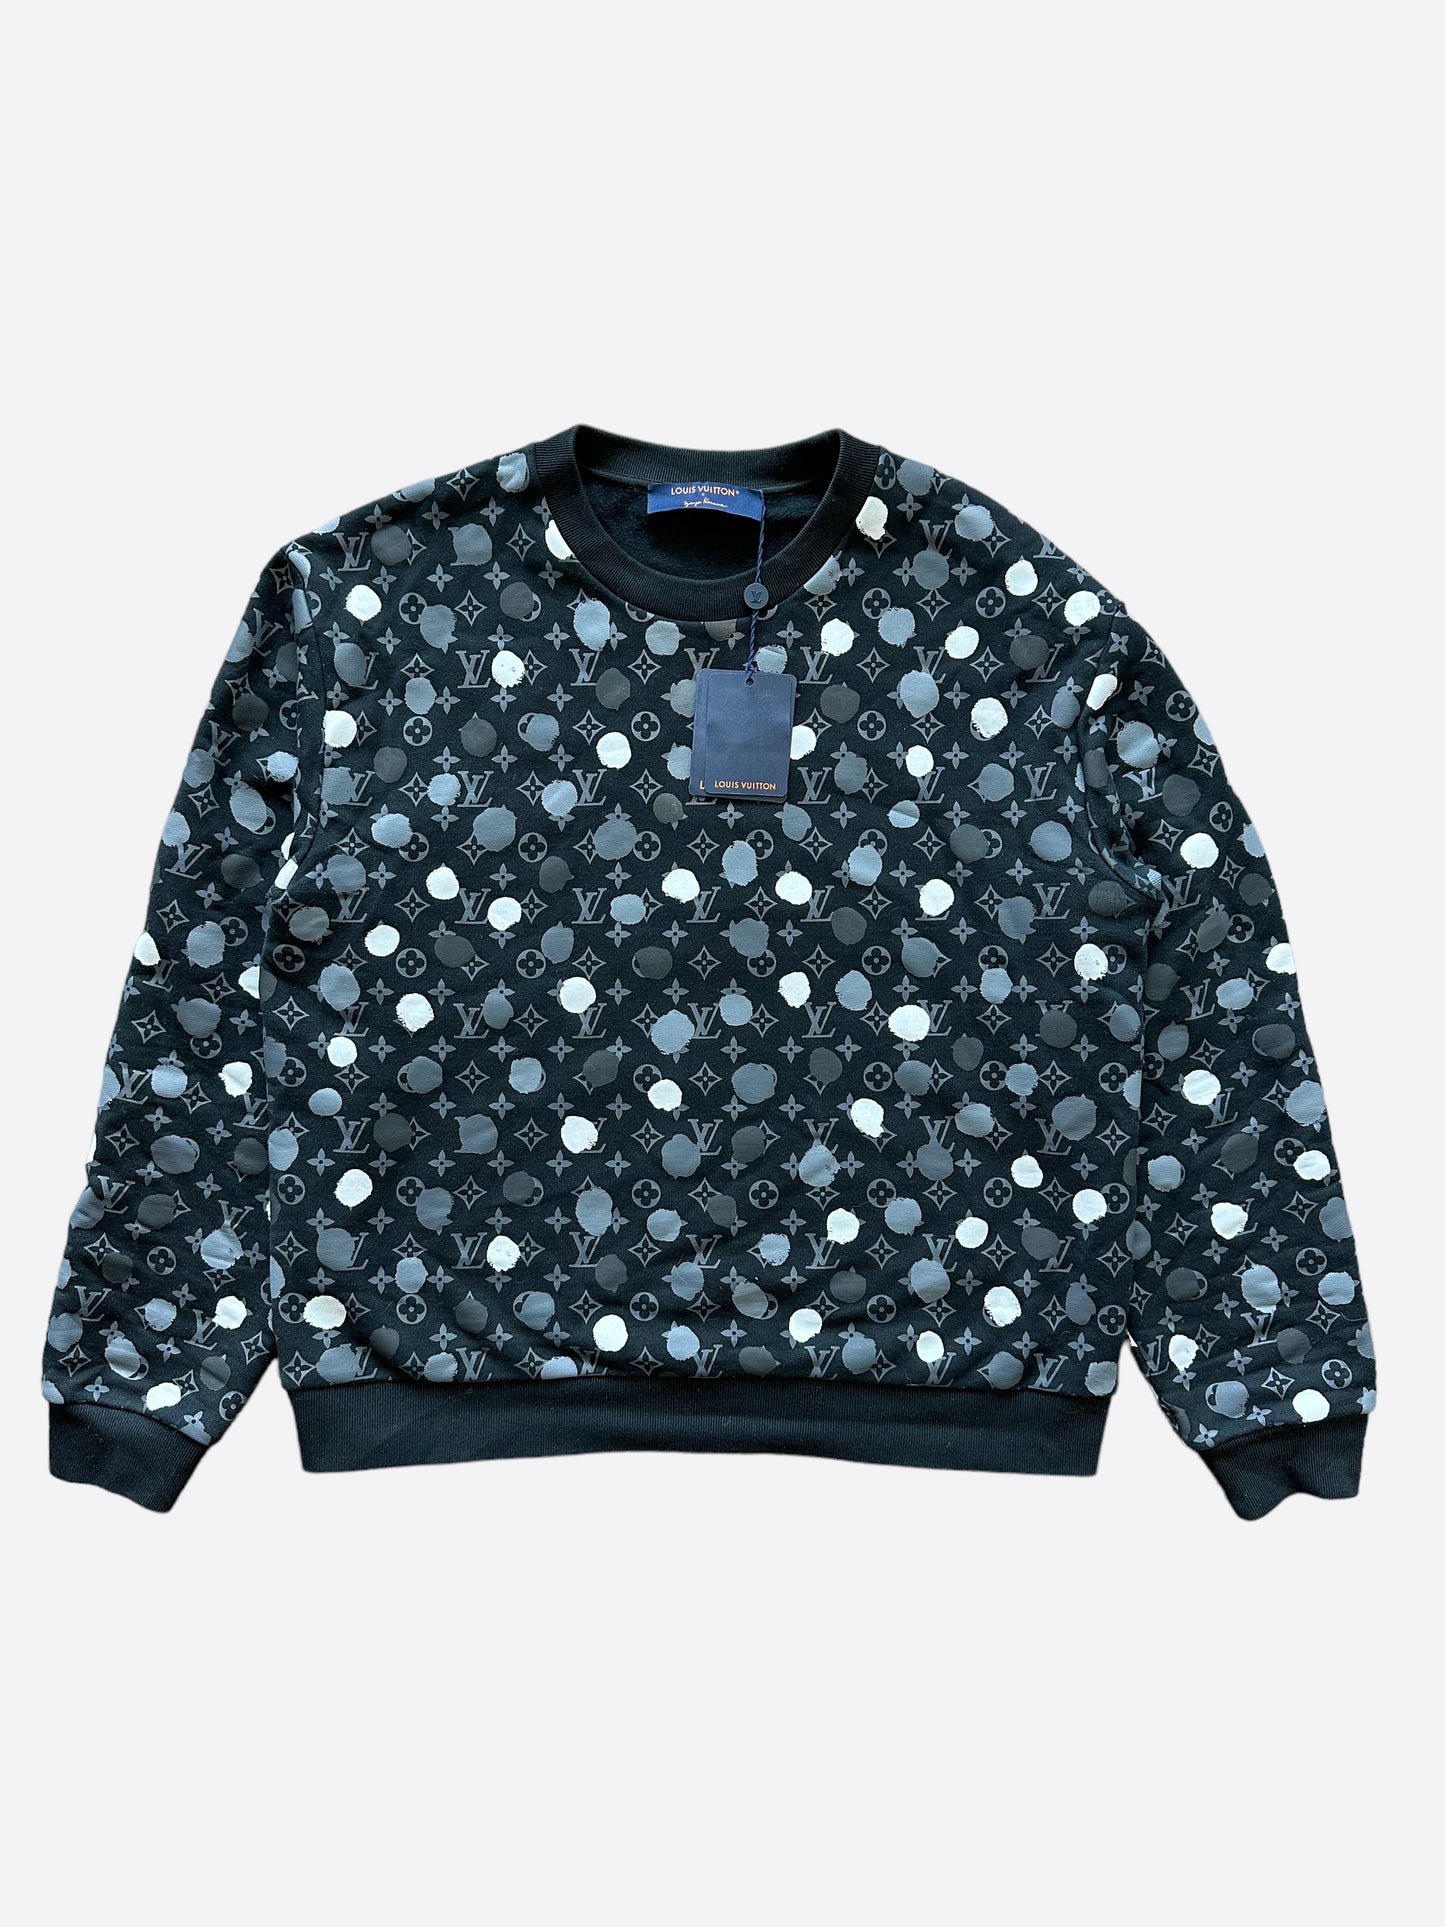 Louis Vuitton x Yayoi Kusama Painted Dots Sweatshirt